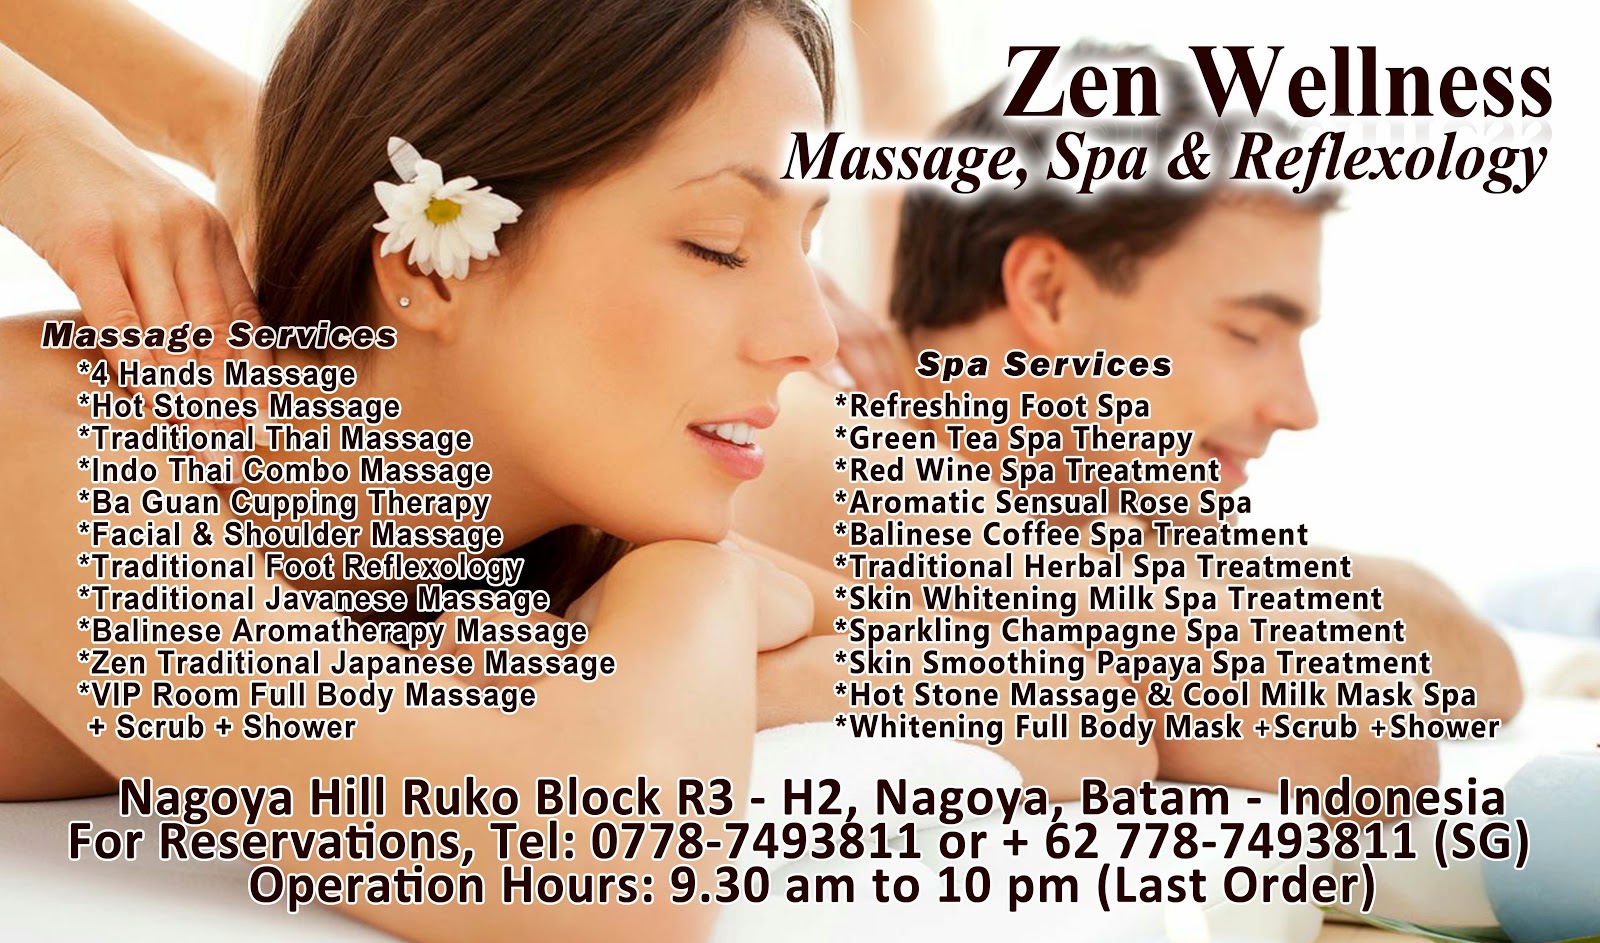 Zen Wellness Batam Massage, Spa & Reflexology zen wellness